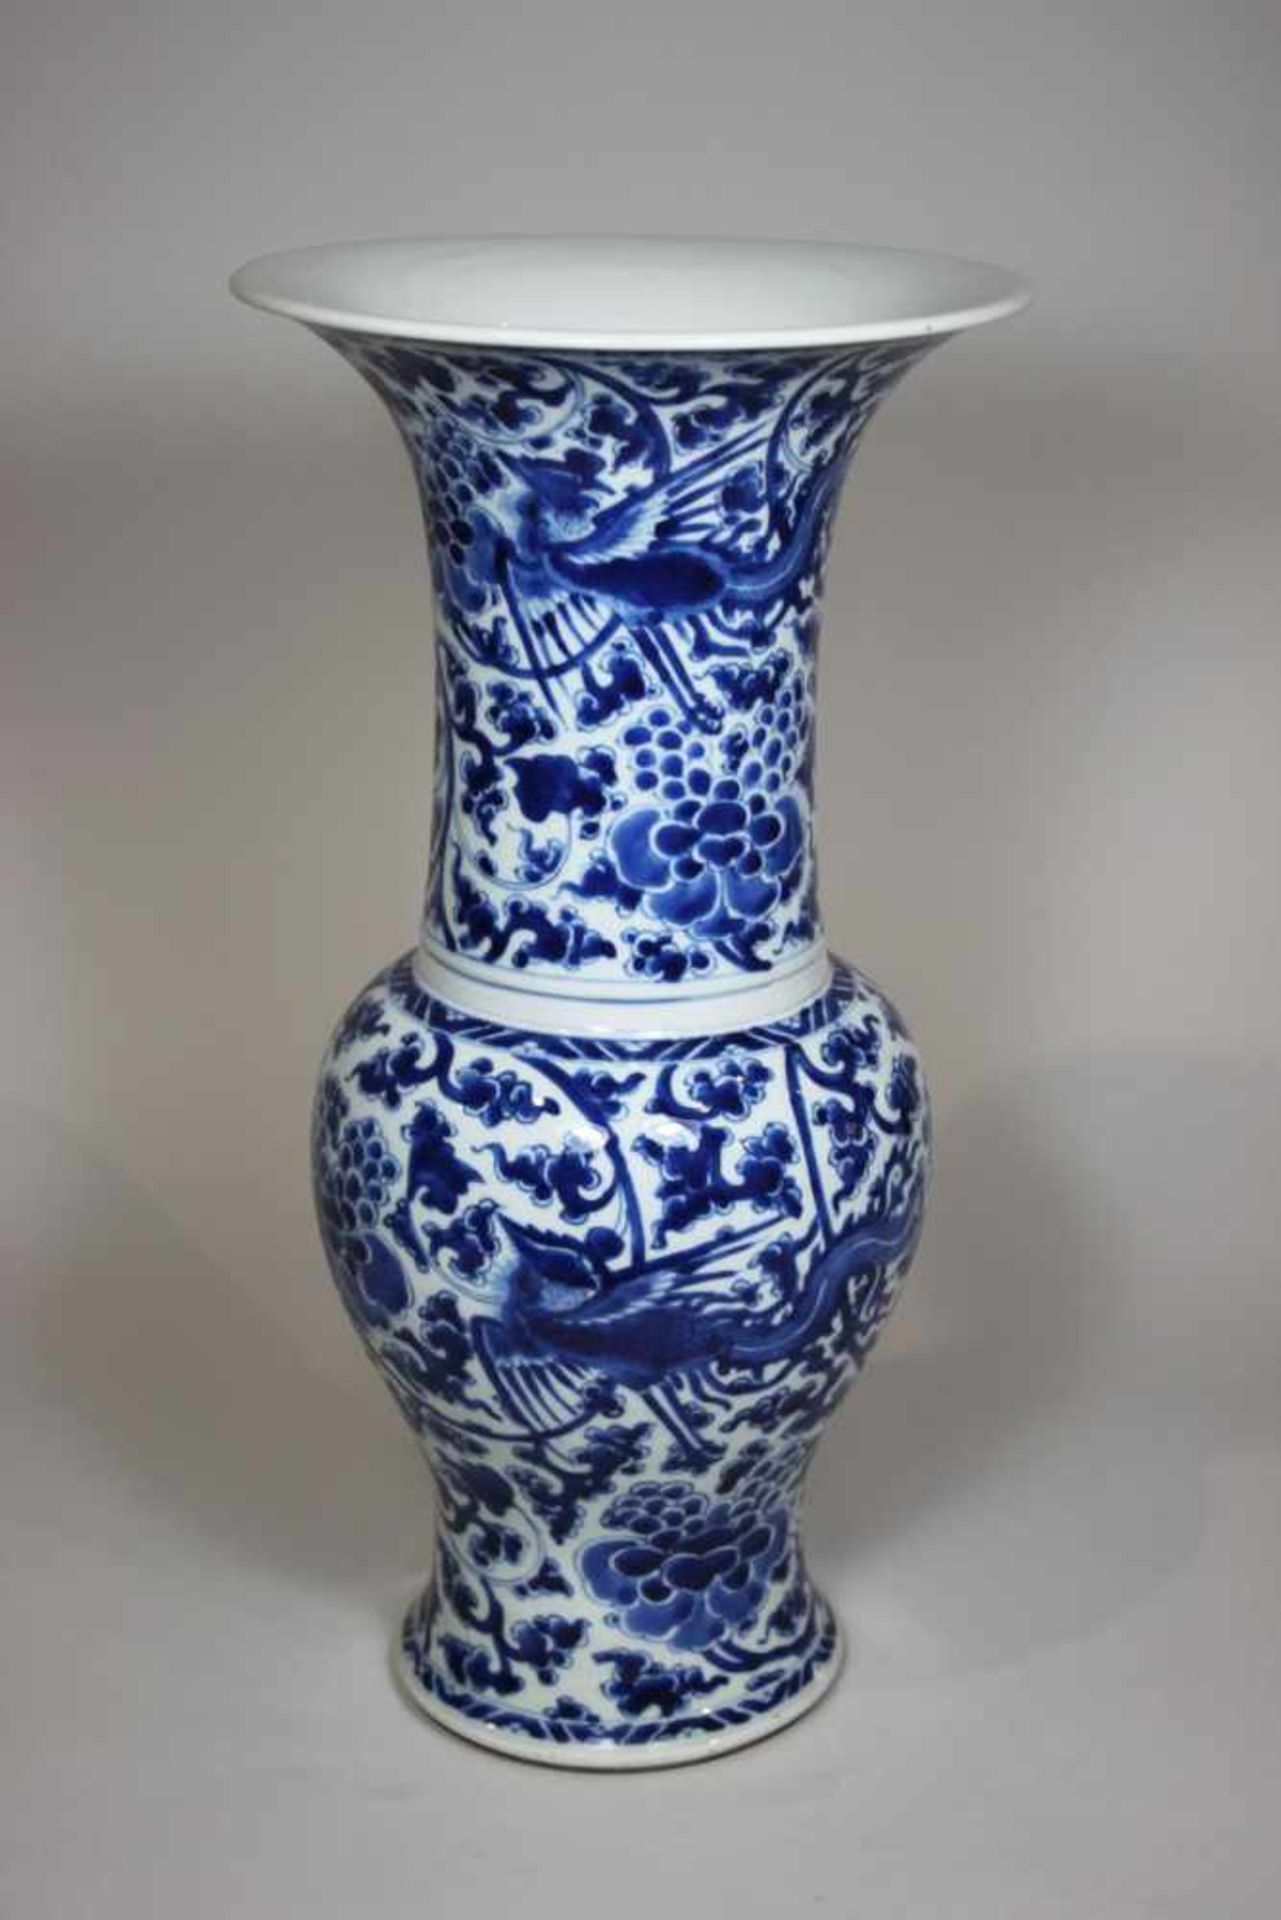 Große Porzellanvase, 18 Jh., blau-weißes florales Dekor und Phönix Motiv, Epoche Kangxi (1662 -